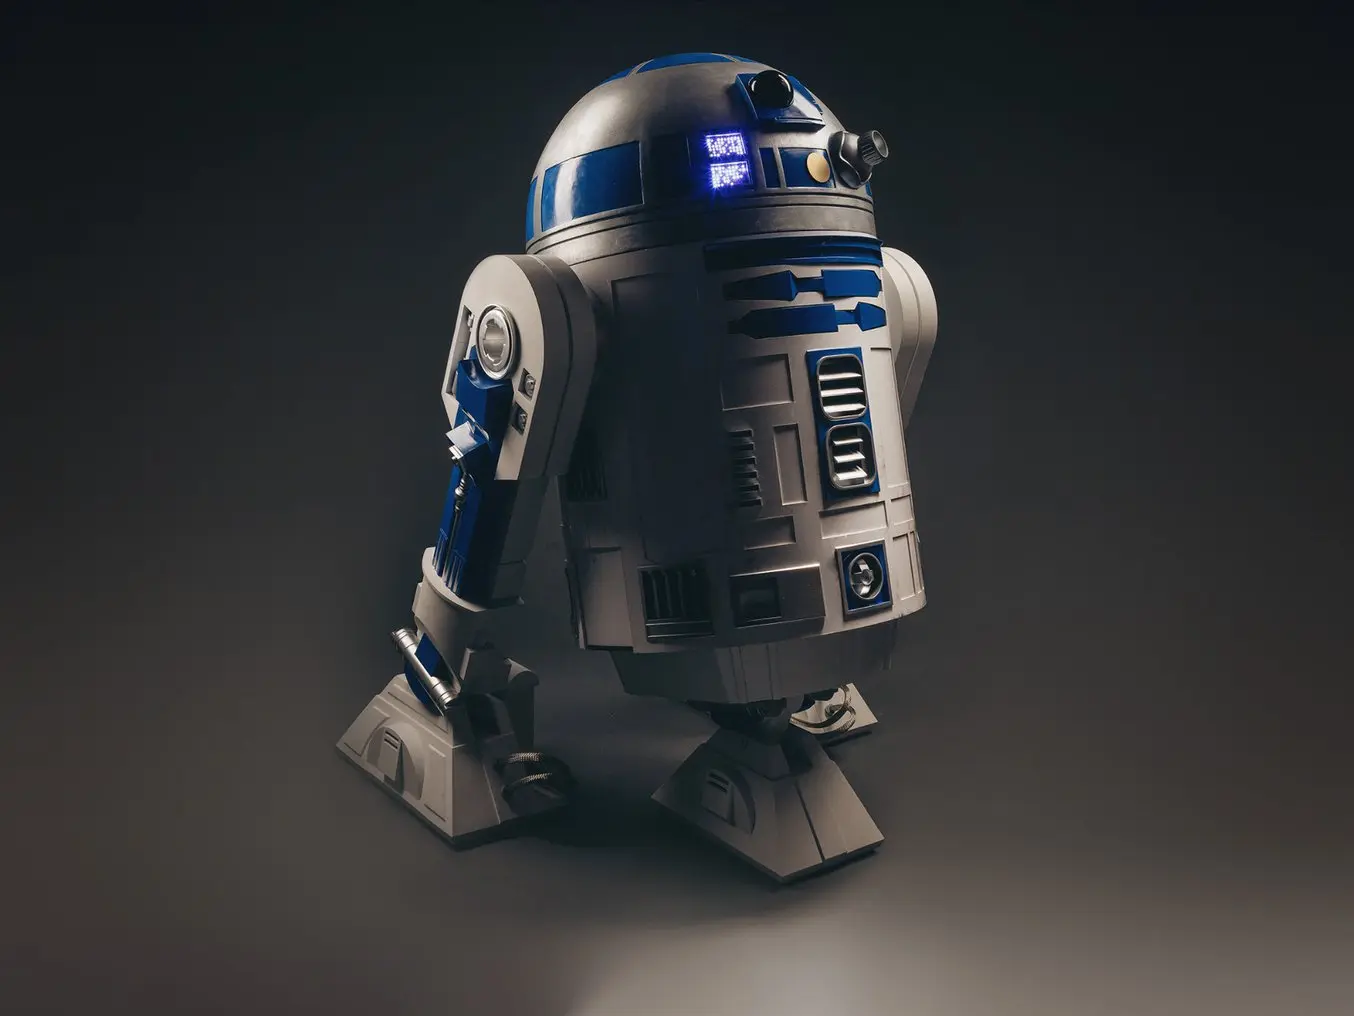 R2-D2 impreso en 3D "Disculpe señor, pero esa unidad R2-D2 está en condiciones óptimas, es una verdadera ganga".